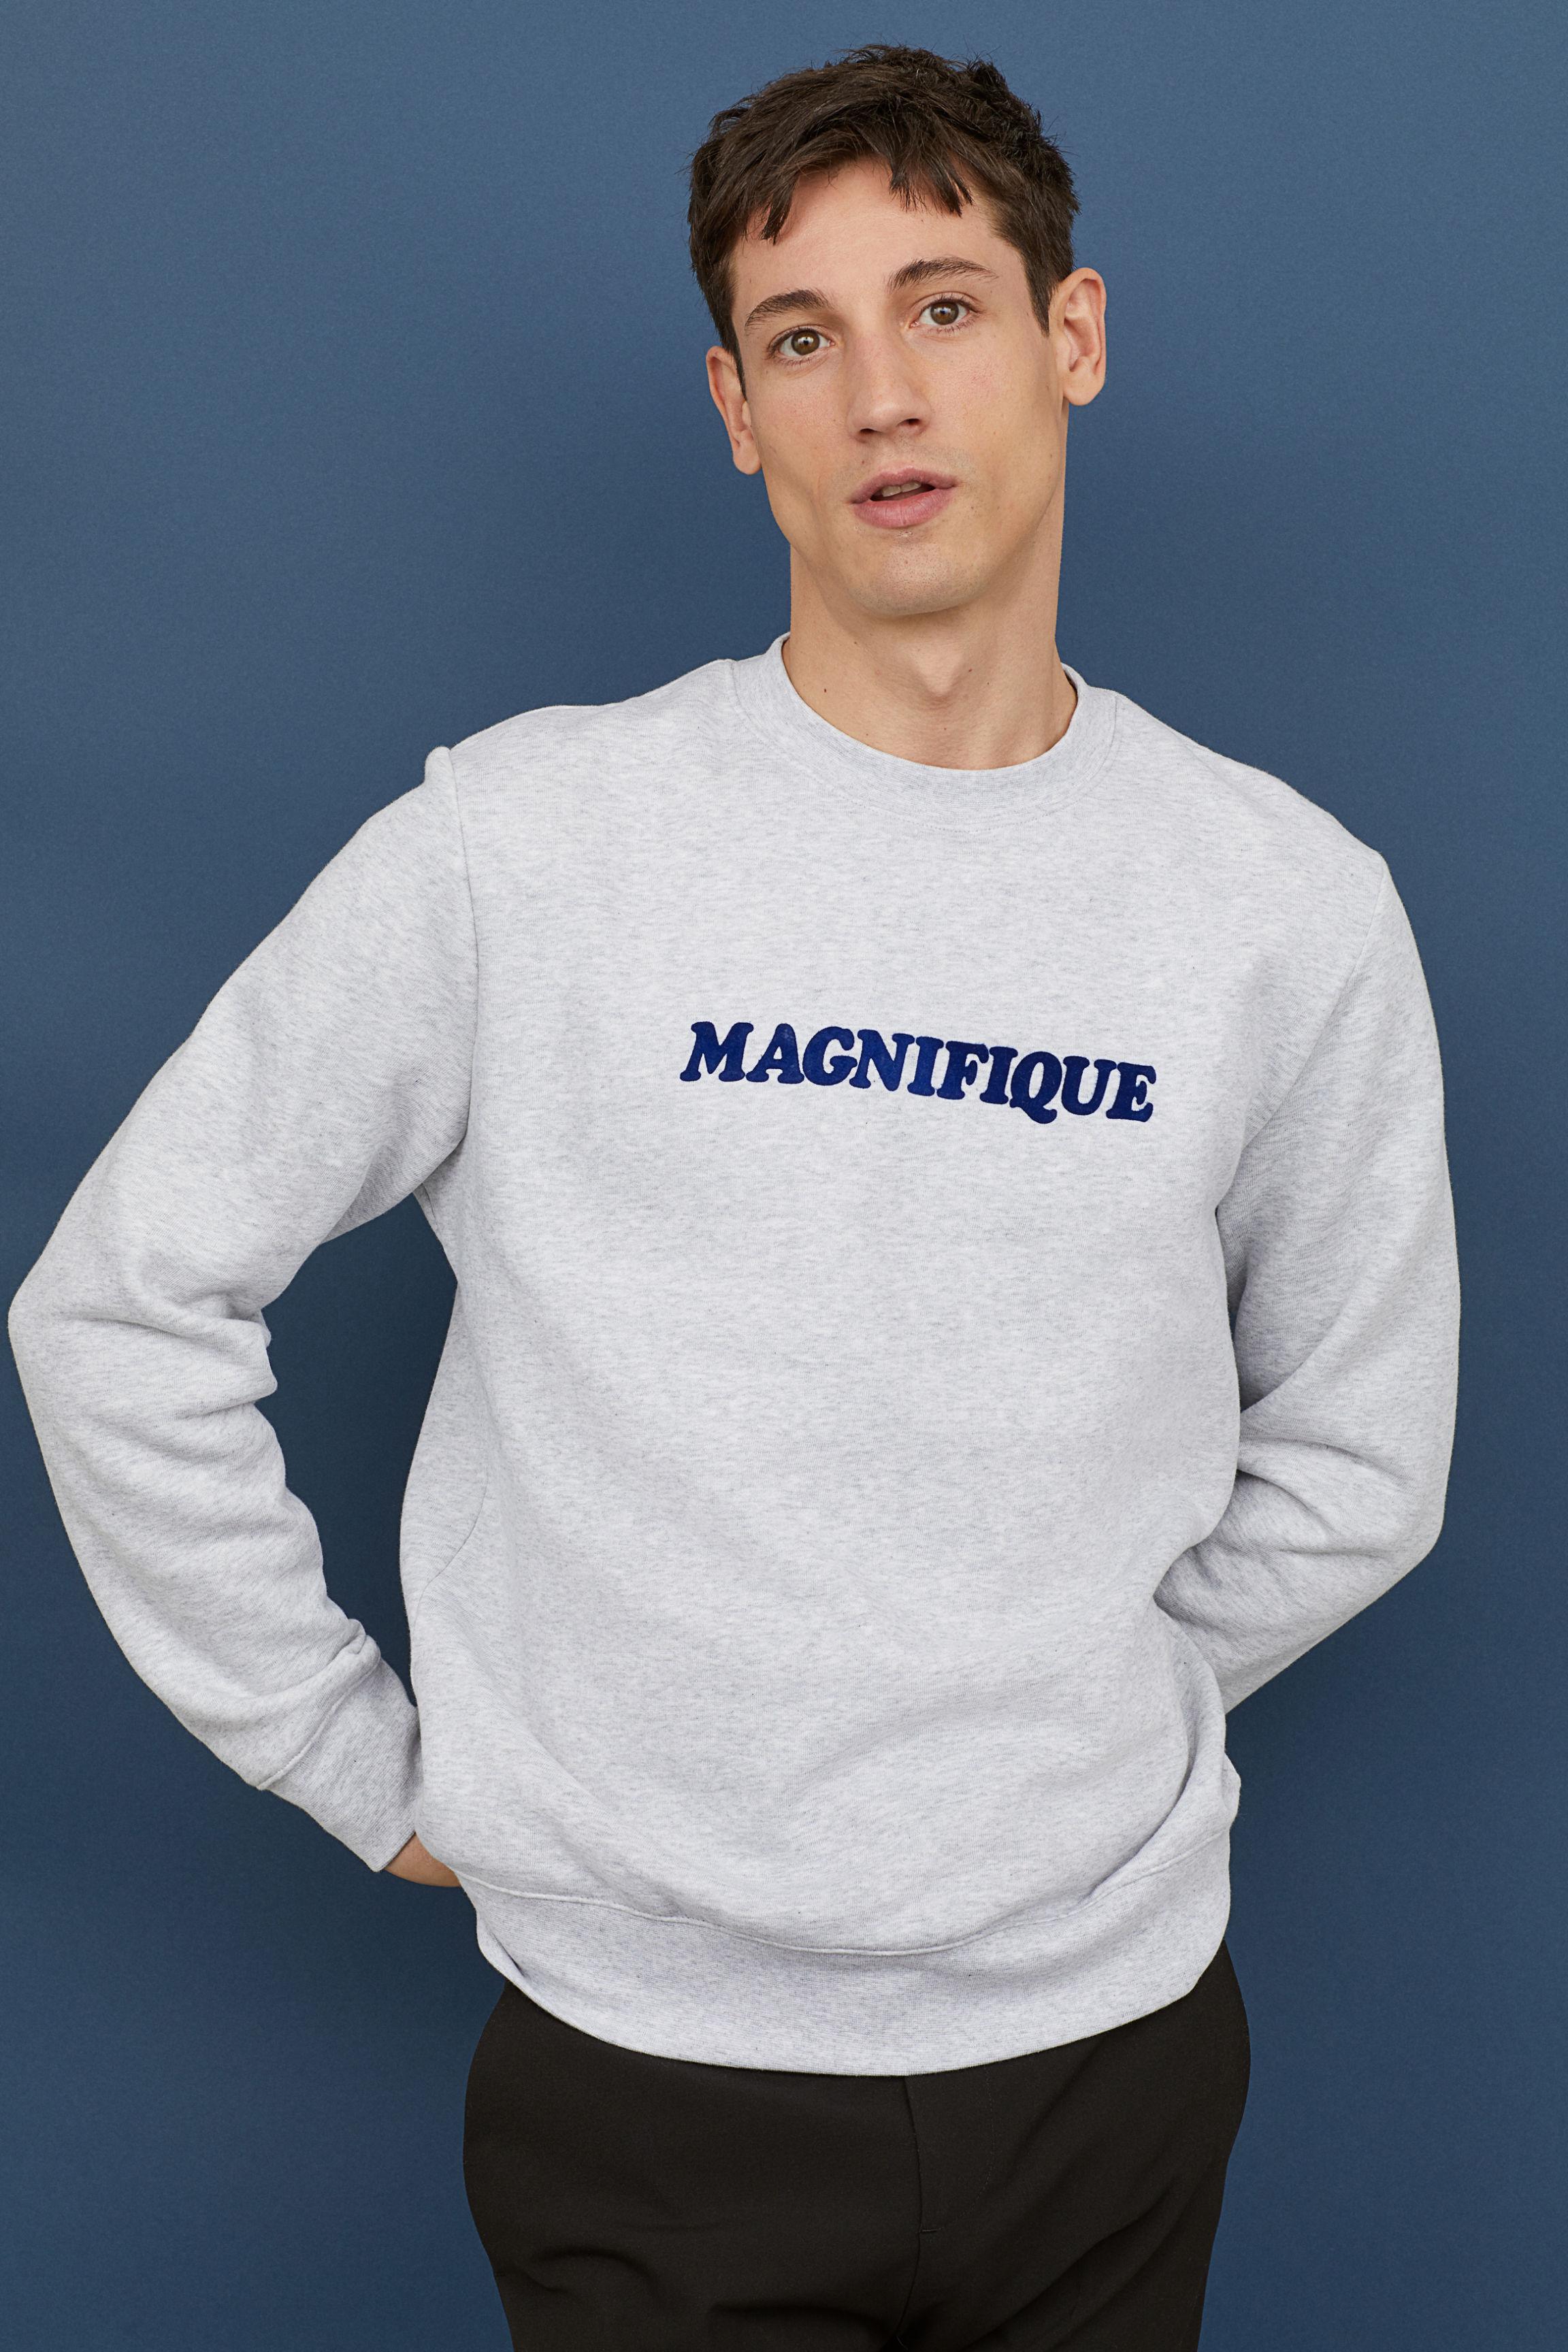 H&m Magnifique Sweatshirt Online, 52% OFF | www.logistica360.pe